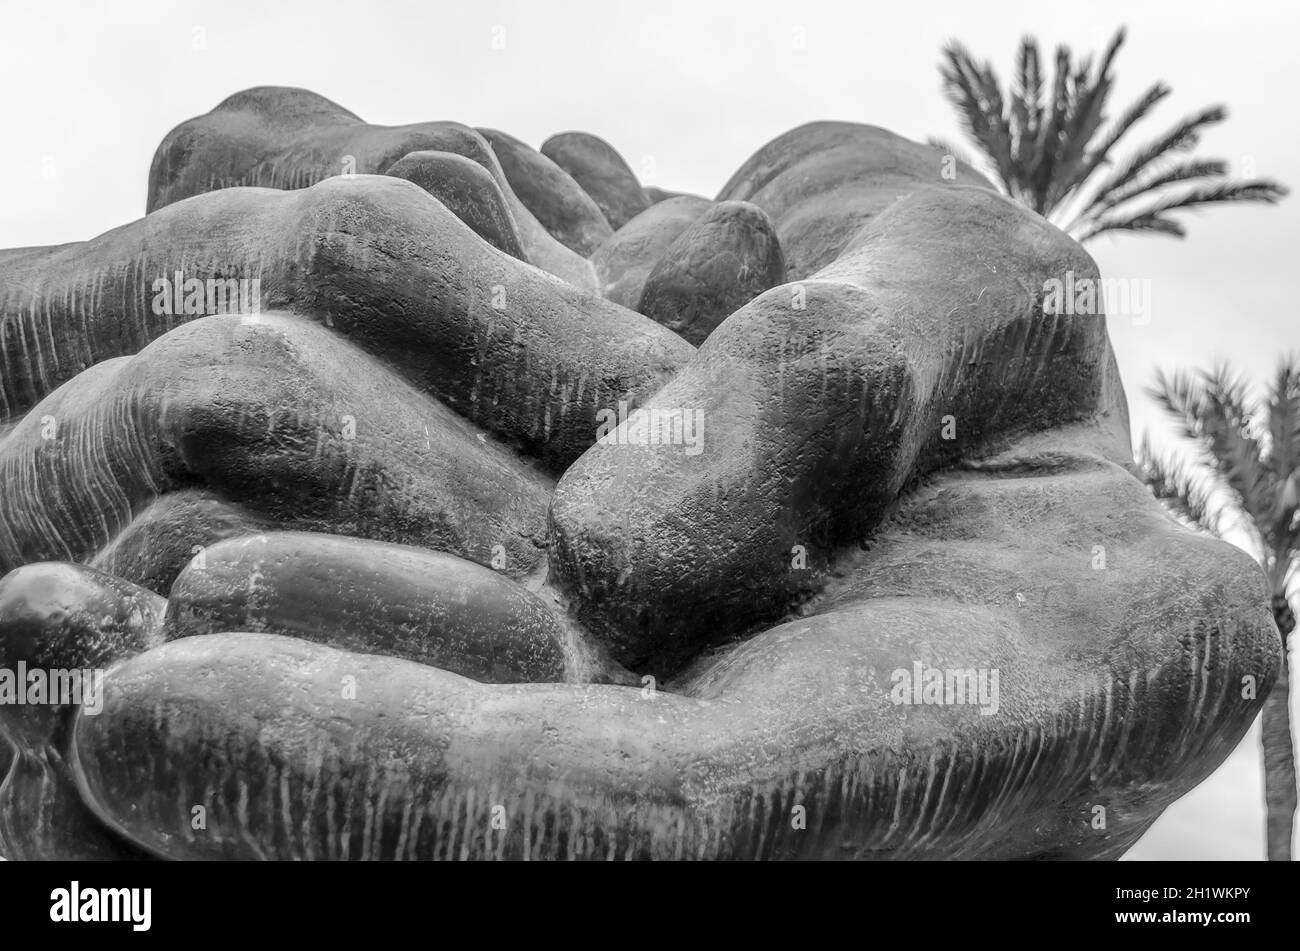 ELCHE, ESPAGNE - 29 DÉCEMBRE 2018: Statue 'Homenaje al datilero' ('hommage au palmier de la date'), représentant les mains qui offrent des dates, travail de l'ar Banque D'Images